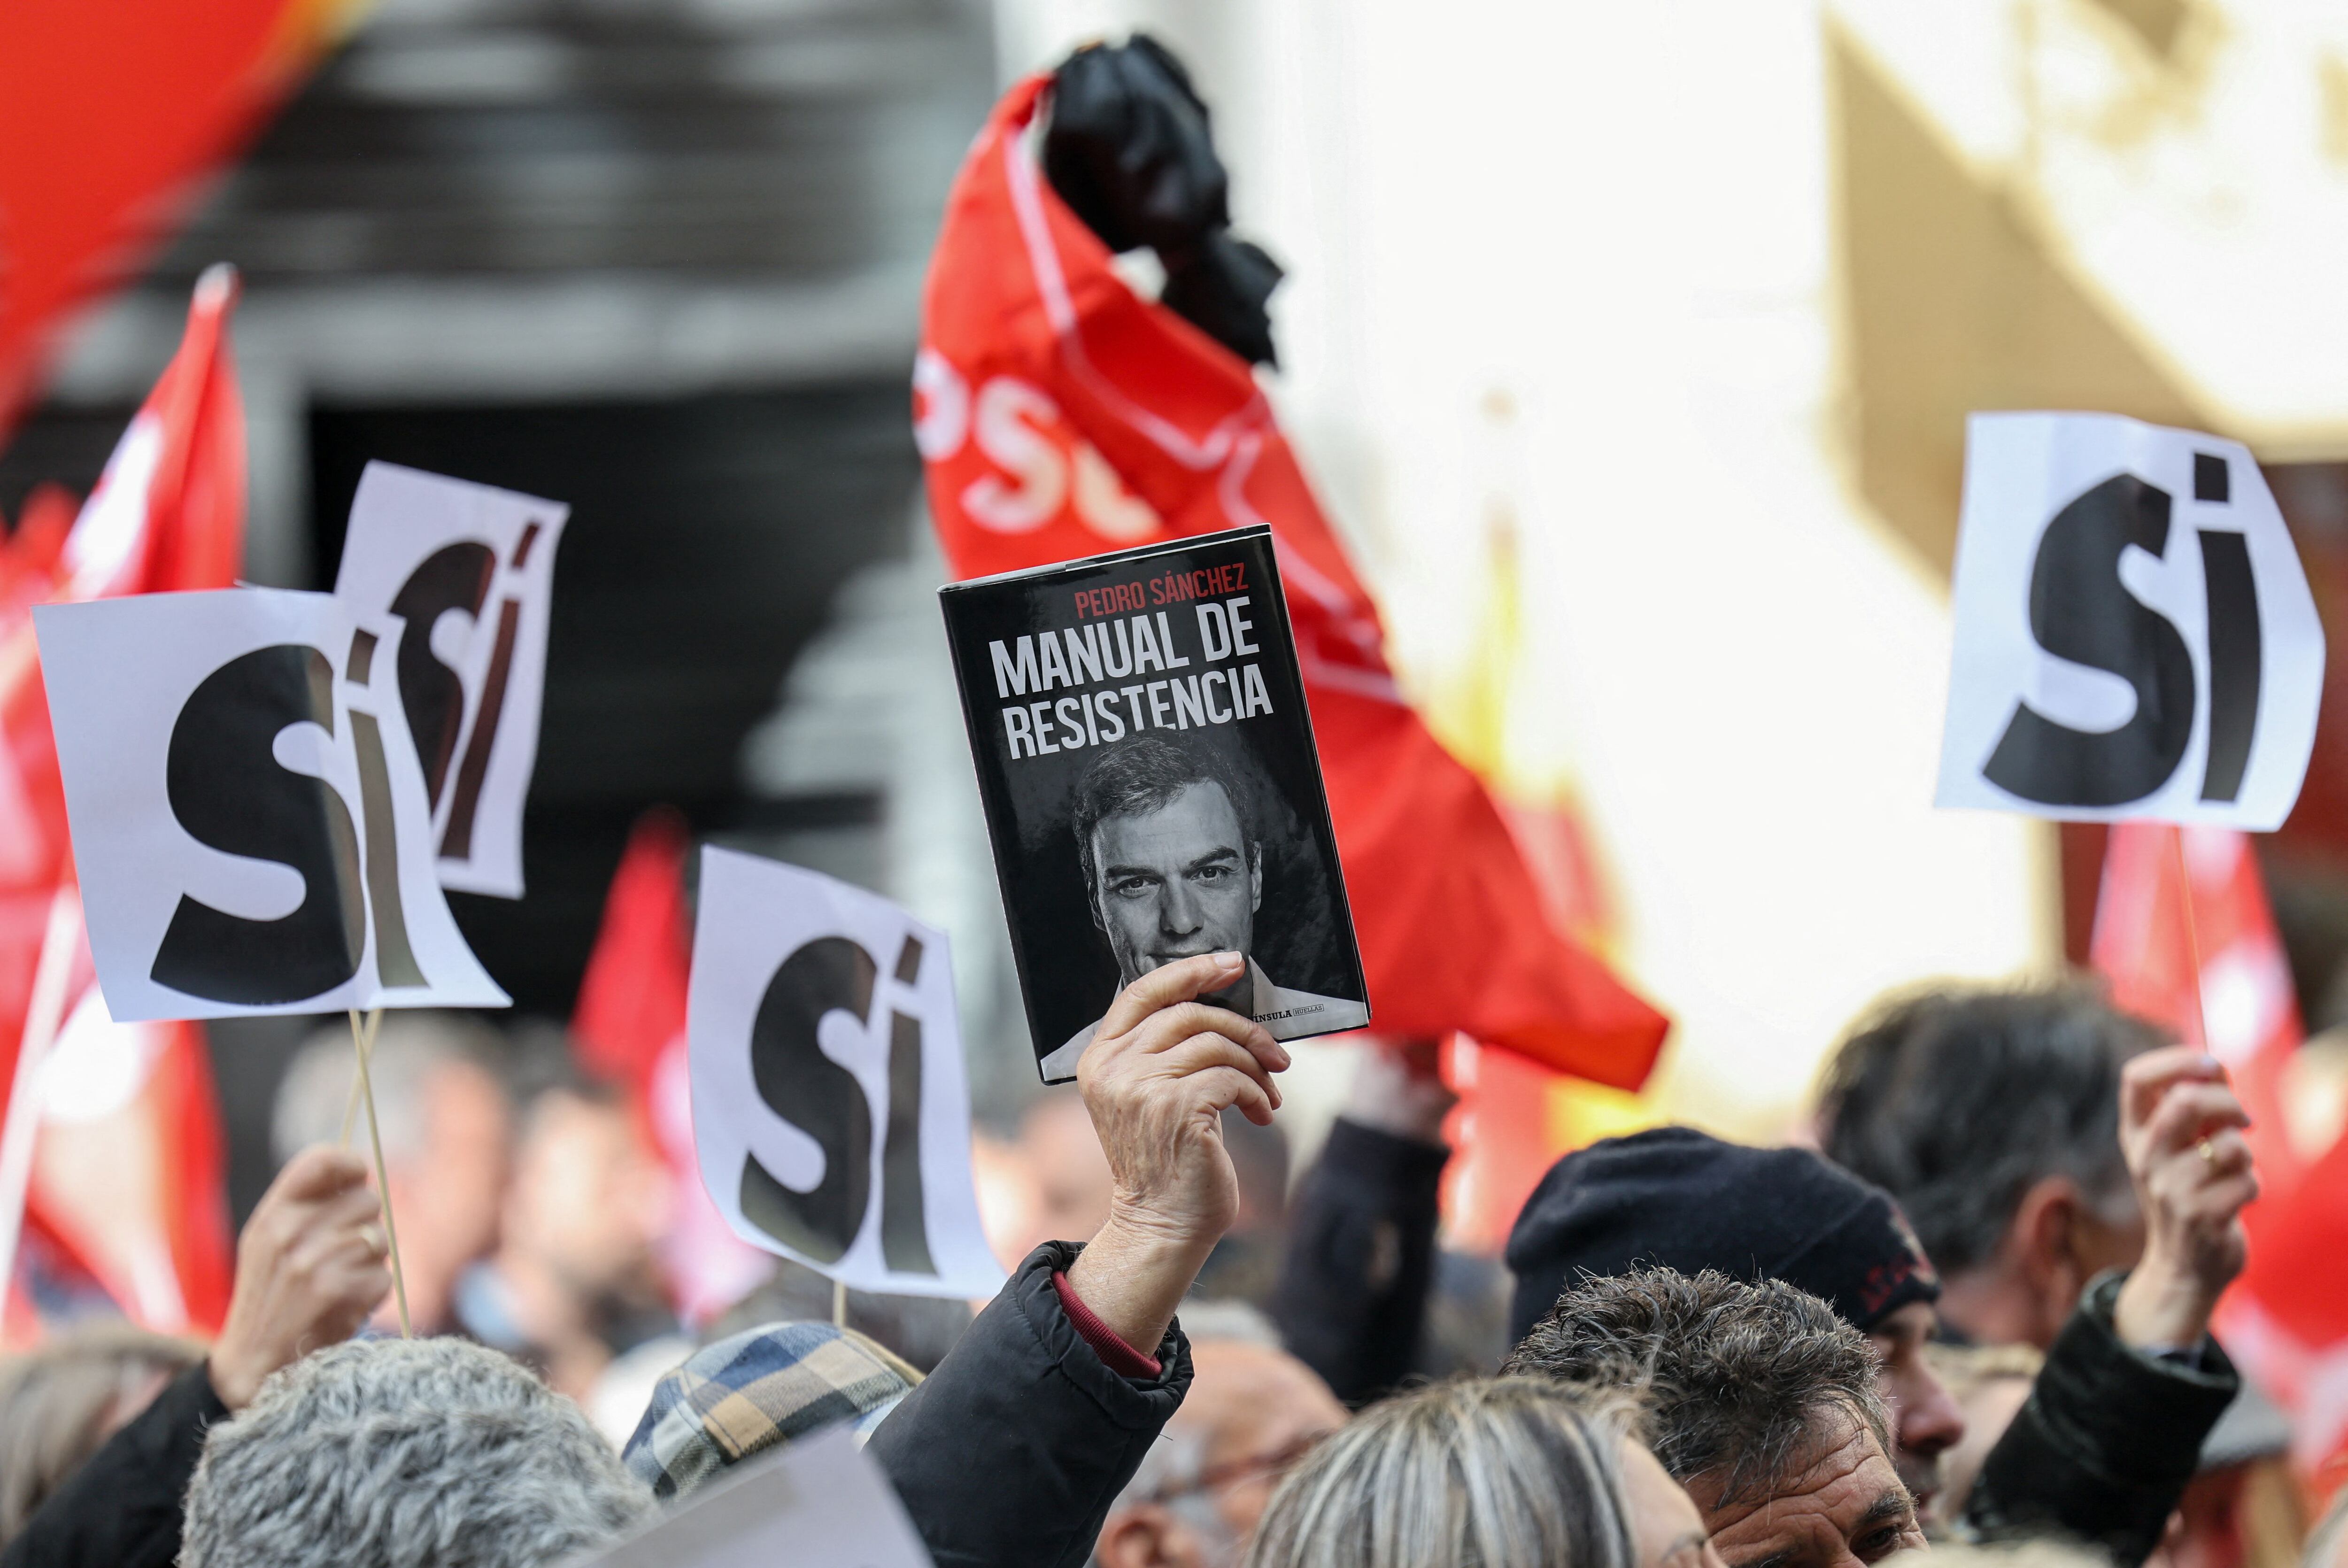 Una persona sostiene una copia del libro "Manual de resistencia" de  Pedro Sánchez, mientras la gente se reúne frente a la sede del PSOE para mostrar su apoyo al jefe de gobierno español, en Madrid, el 27 de abril de 2024. Fotoğraf: Reuters